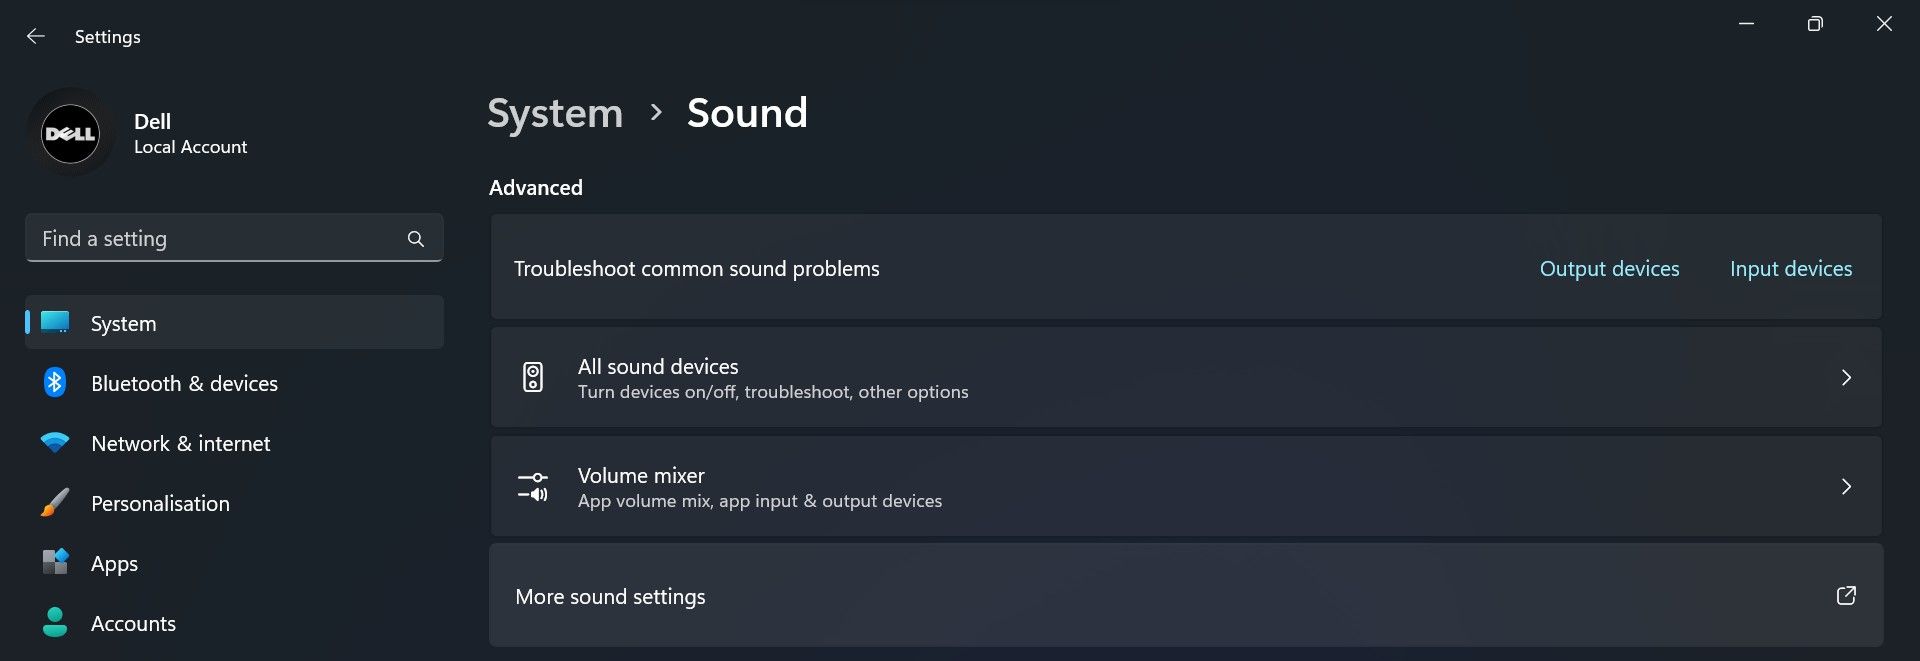 转到 Windows 设置应用程序中的更多声音设置选项